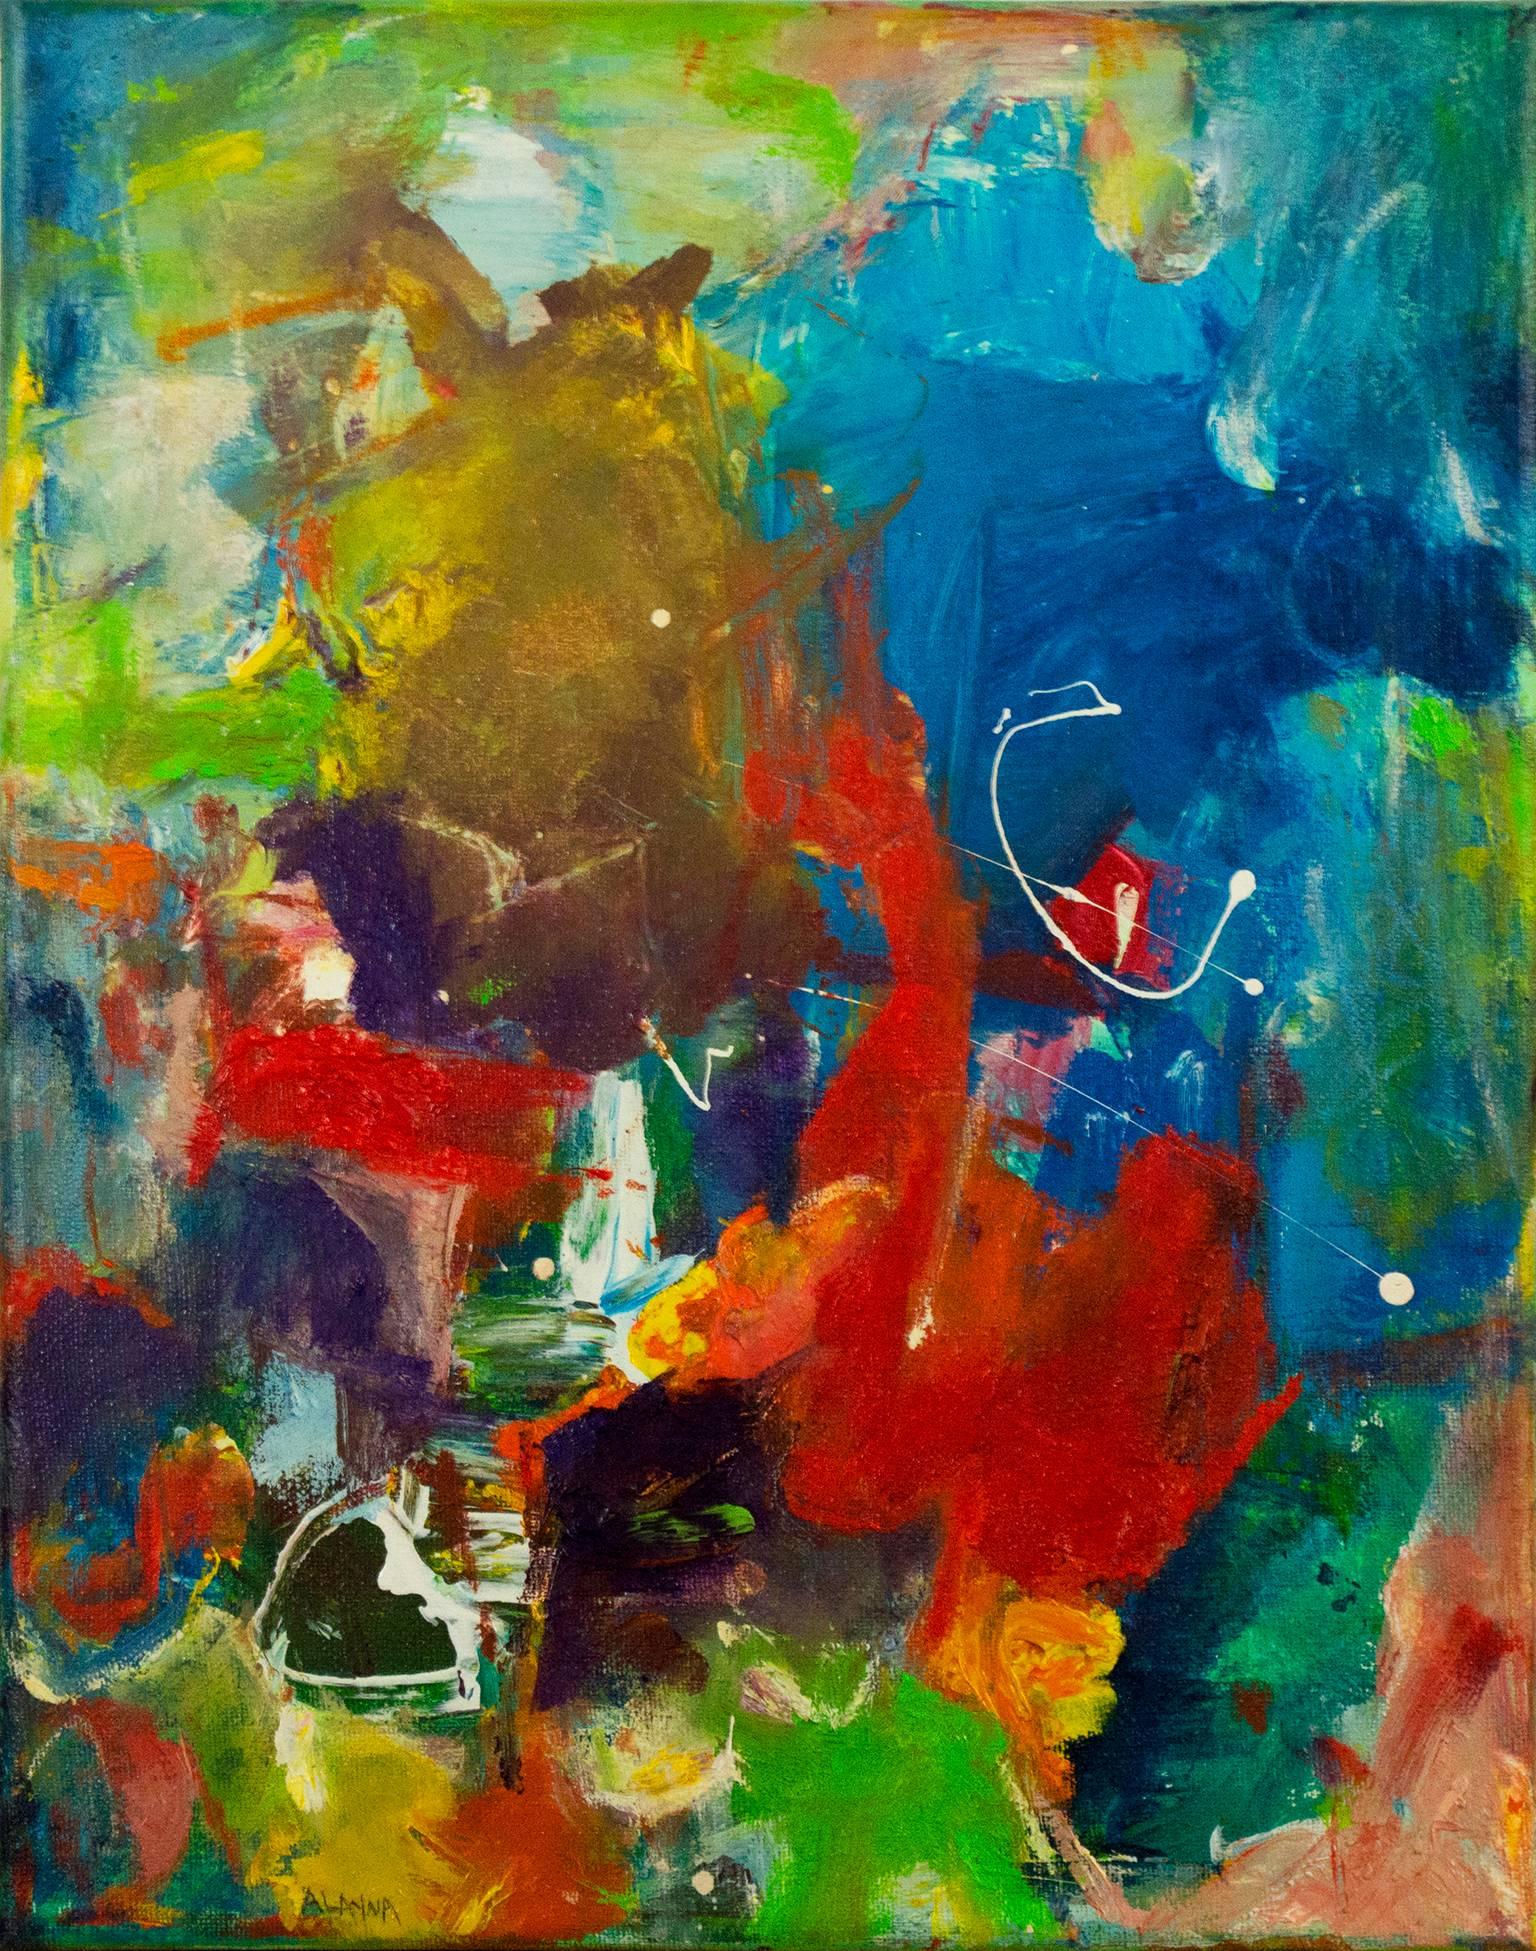 "Gypsy Wind II" est une peinture à l'huile originale sur toile d'Alayna Rose. L'artiste a signé le tableau en bas à gauche. Cette peinture présente une variété de marques abstraites en vert, jaune, violet, rouge et bleu. La galerie David Barnett met